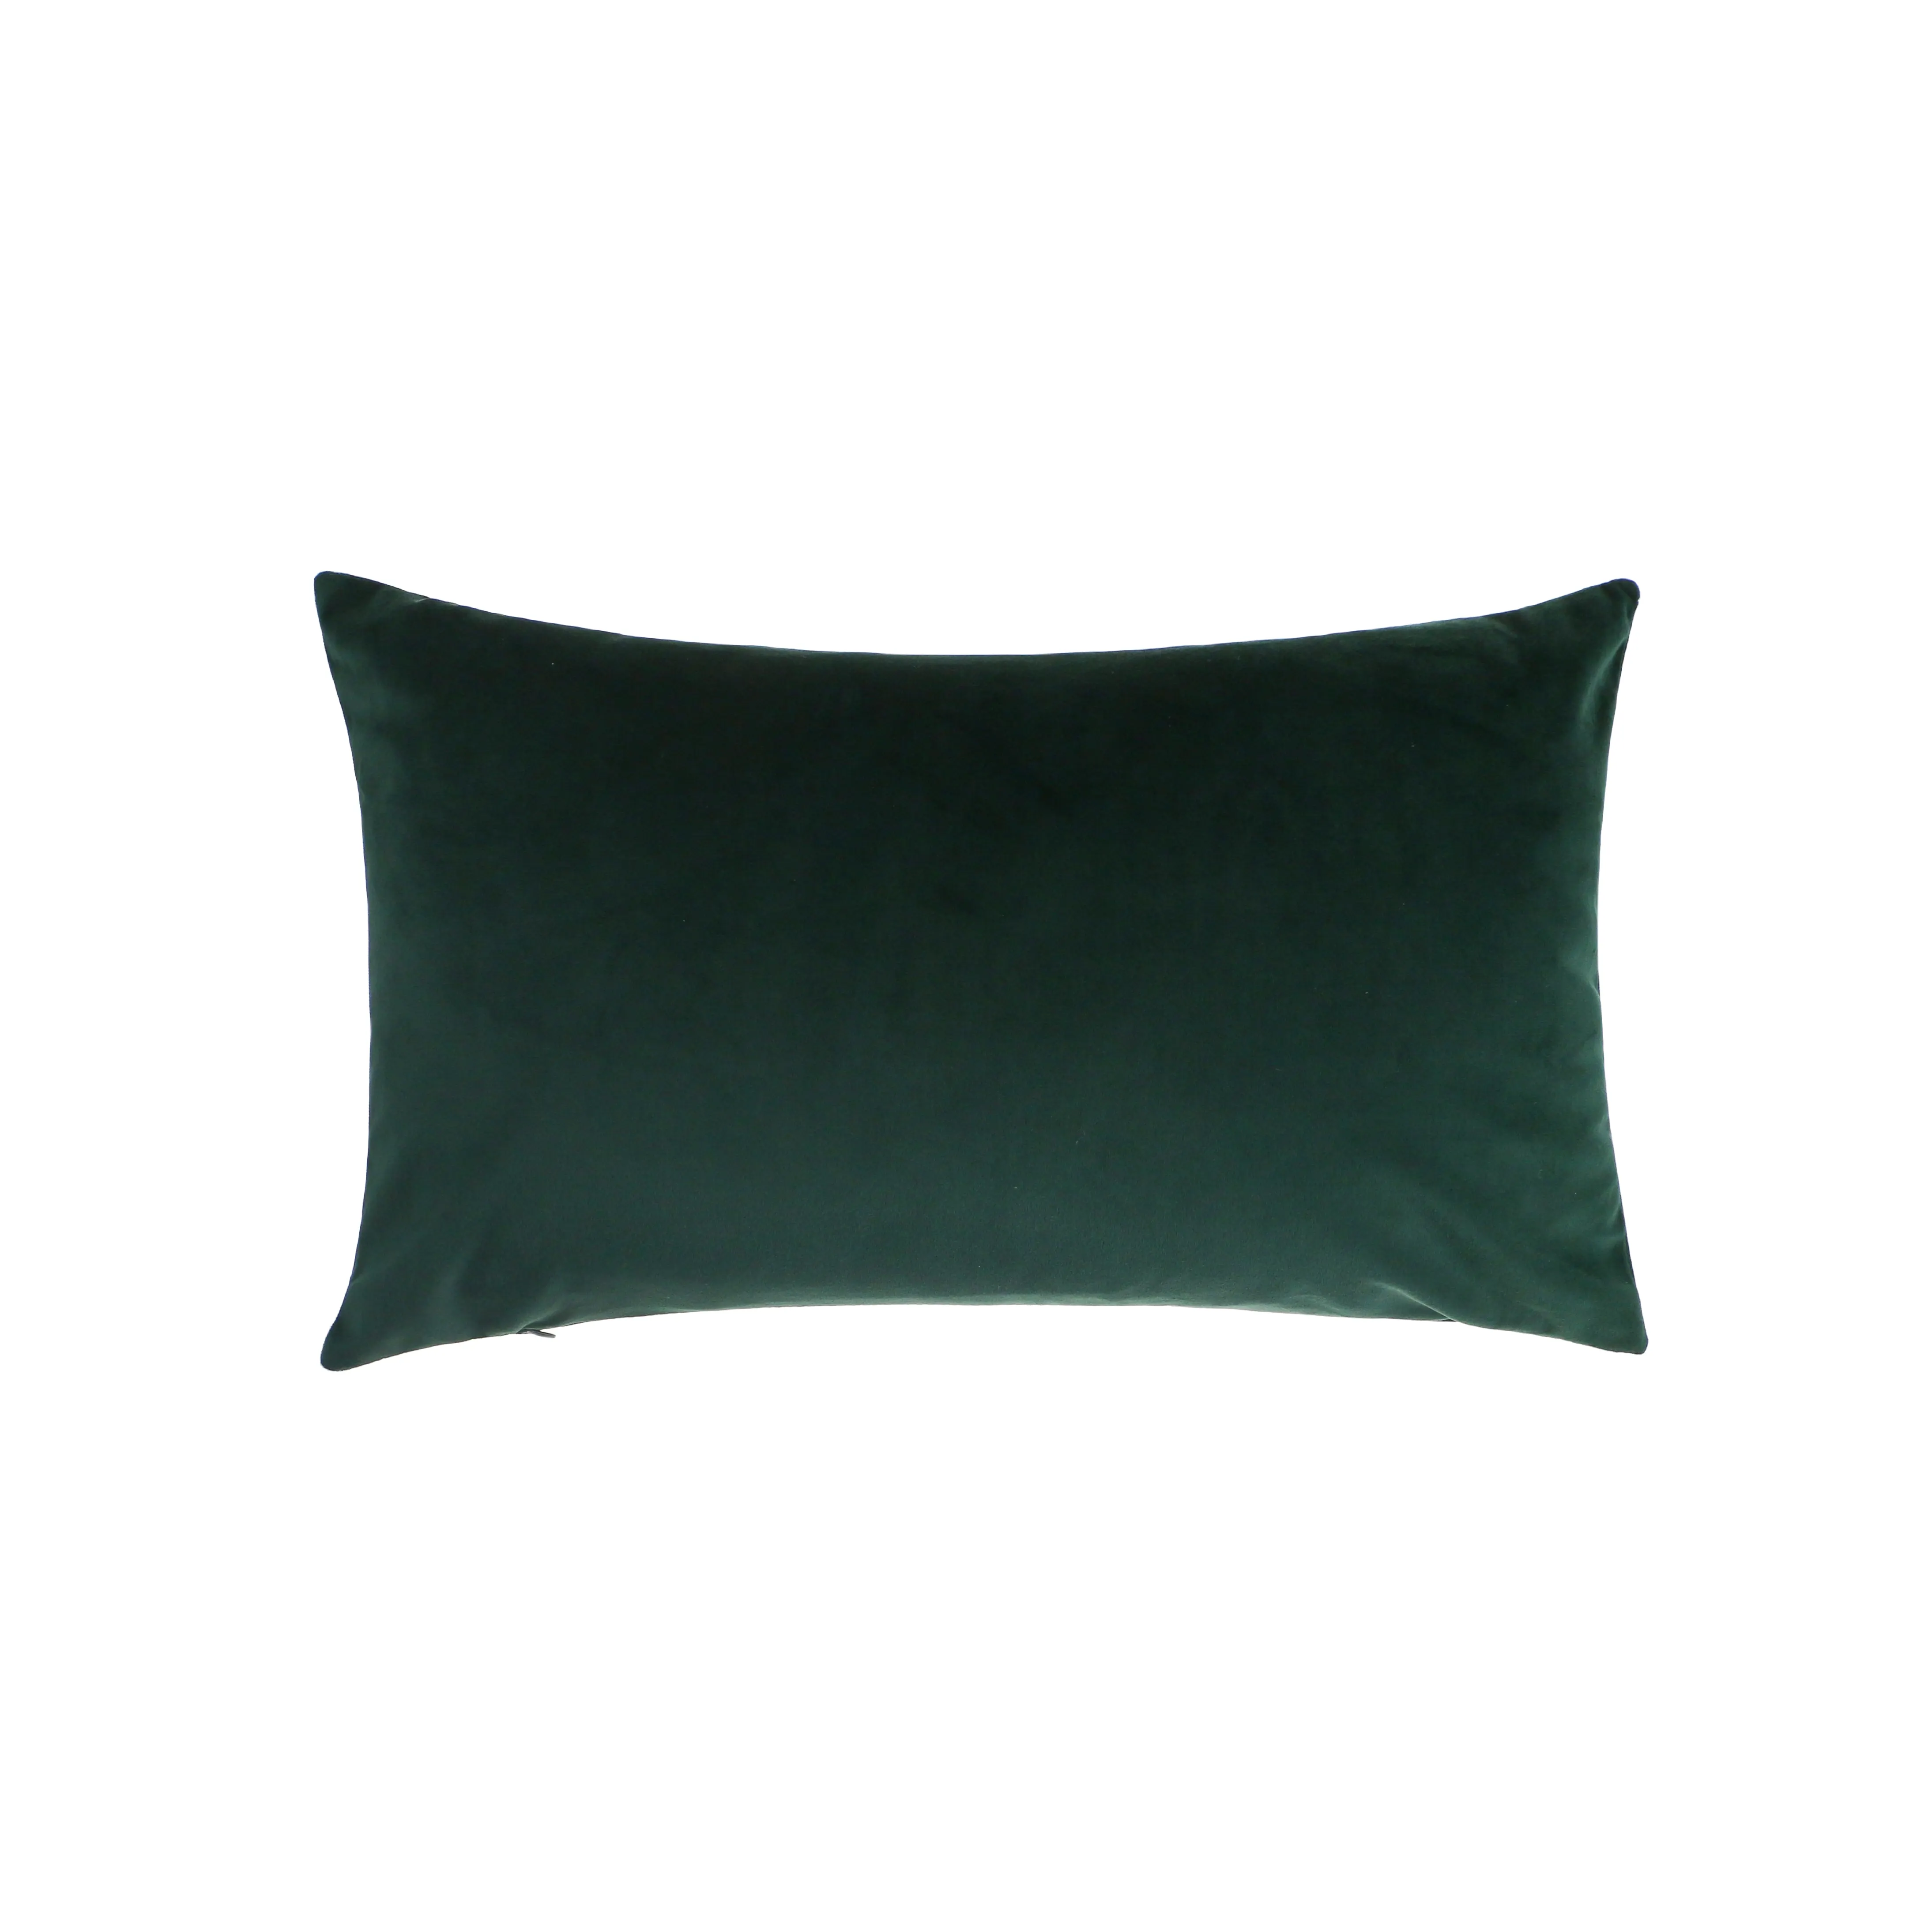 Capa de almofada de veludo lisa verde escuro para travesseiro 50*30 cm Decoração de fábrica por atacado